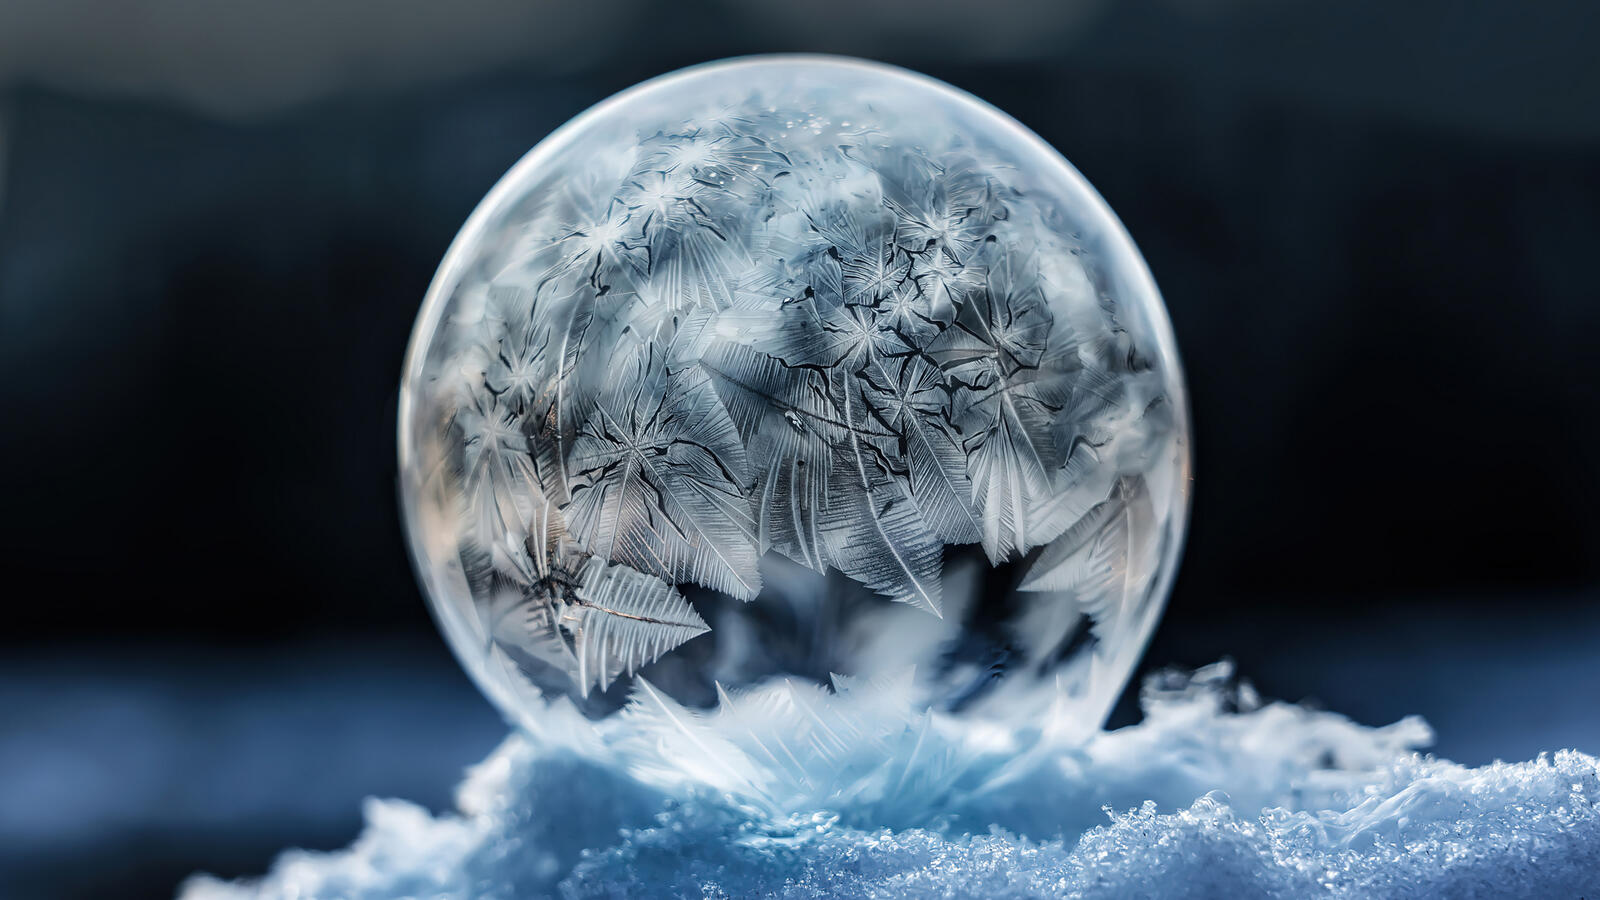 Бесплатное фото Круглый кристалл льда